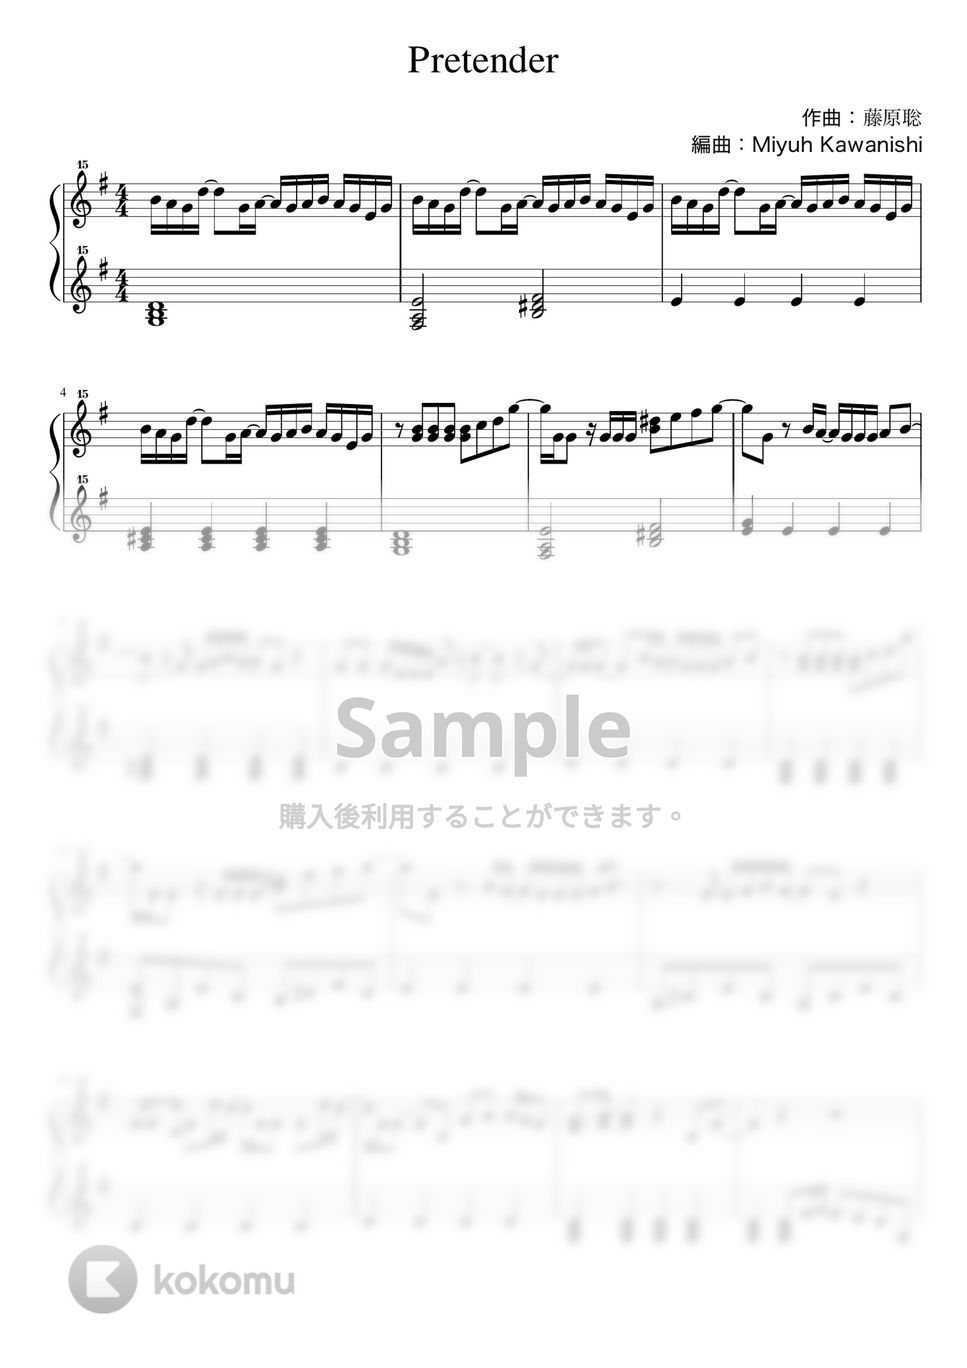 藤原聡 - Pretender (トイピアノ / 32鍵盤 / J-POP) by 川西三裕